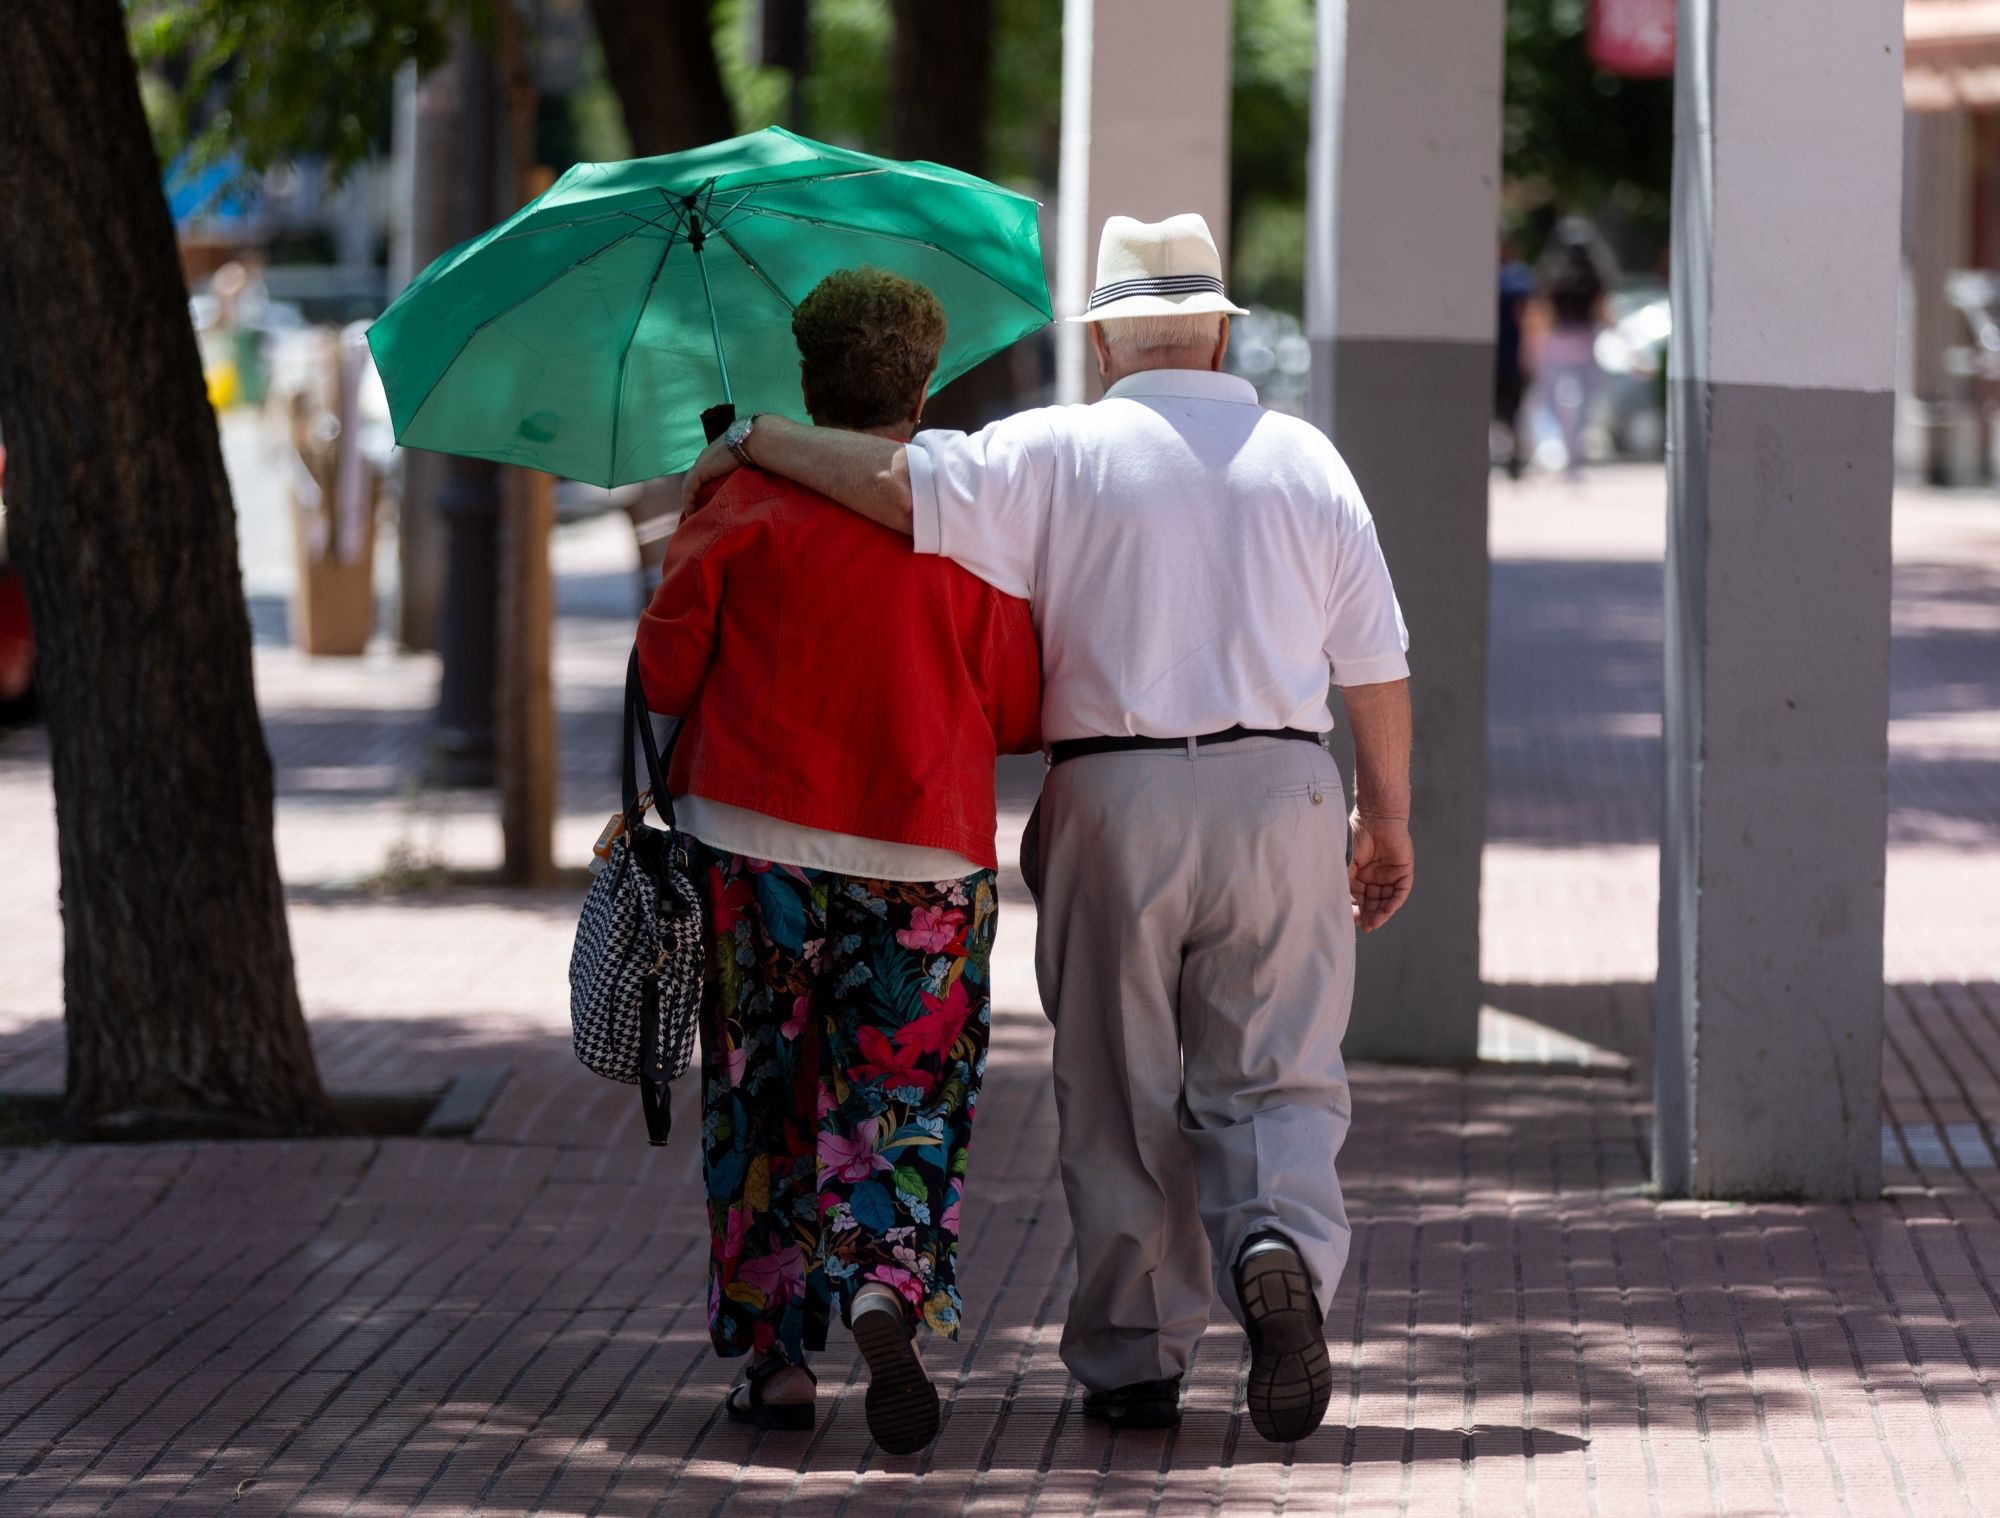 La pensión de jubilación llega a 1.441,8 euros en junio, y la media del sistema es de 1.254,6 euros